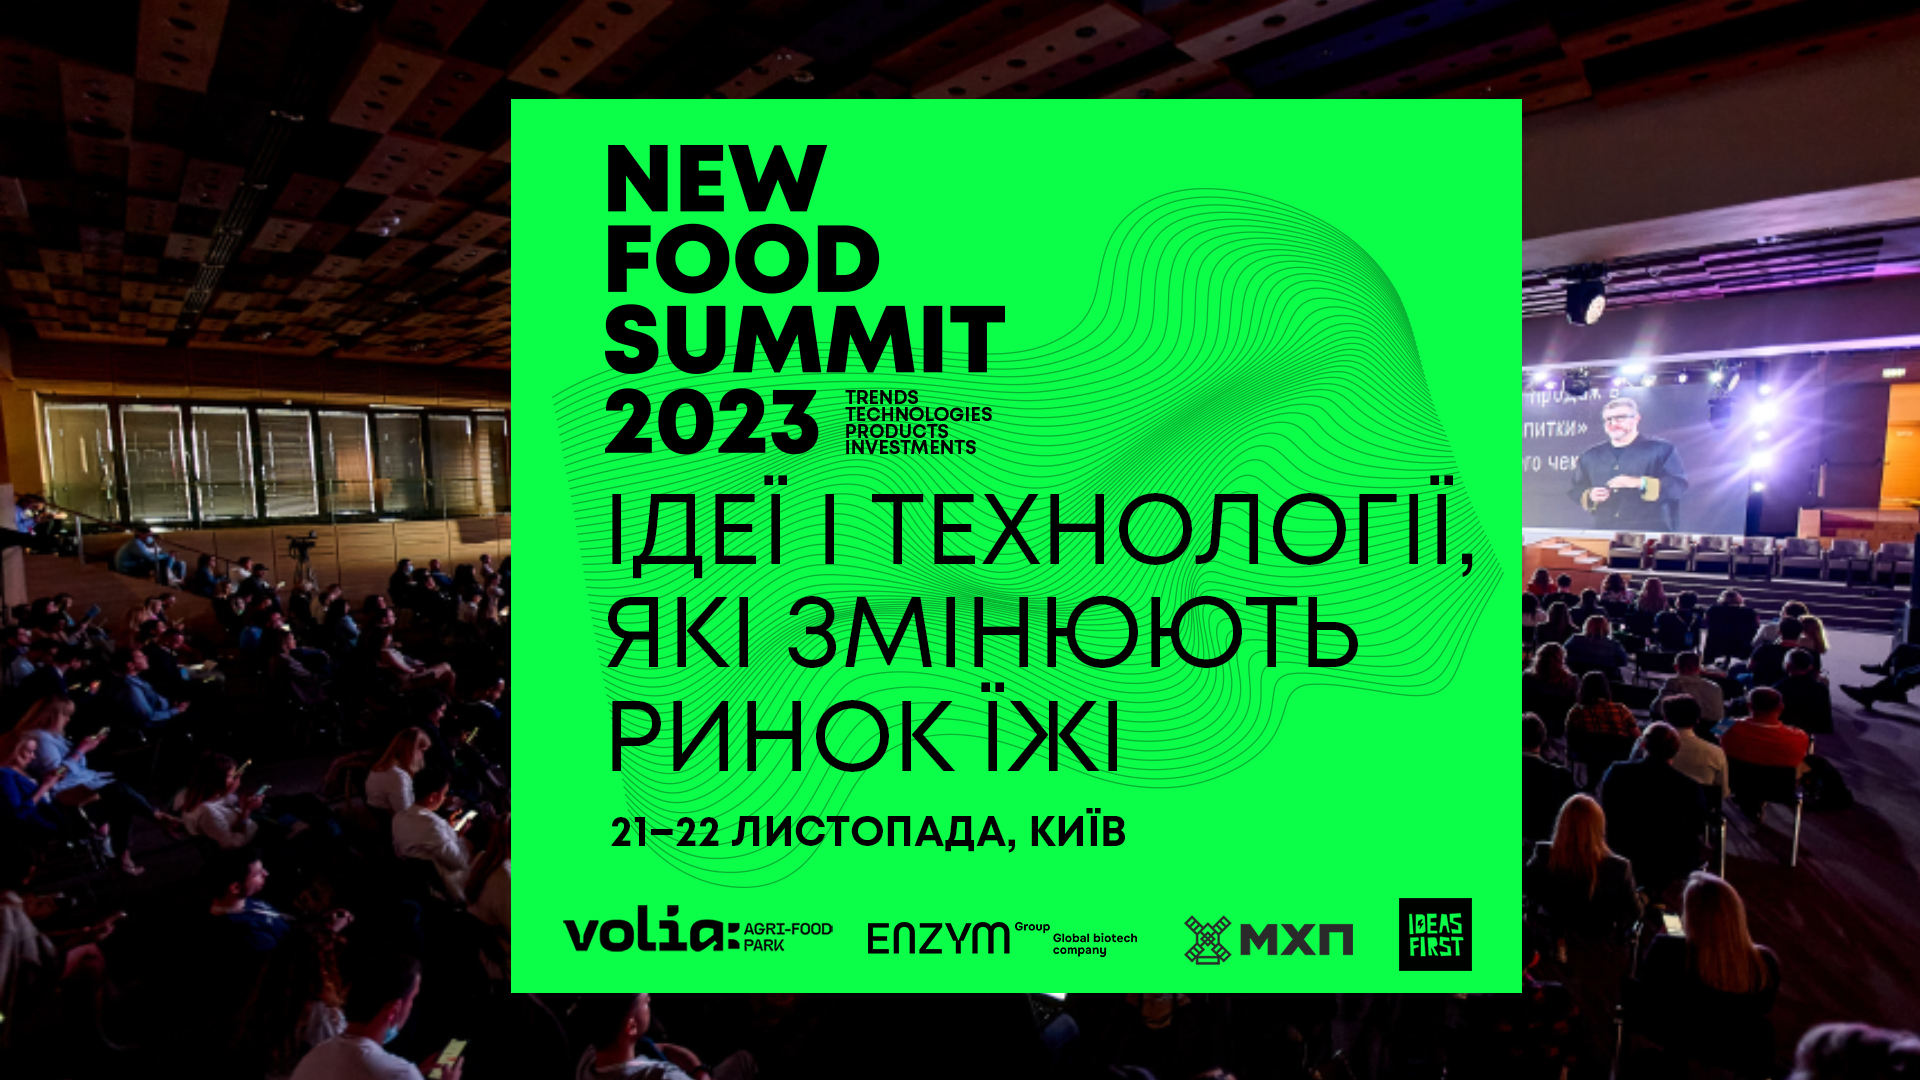 New Food Summit 2023 вперше обʼєднає корпорації, продуктові мережі, інвесторів та Food tech-стартапи